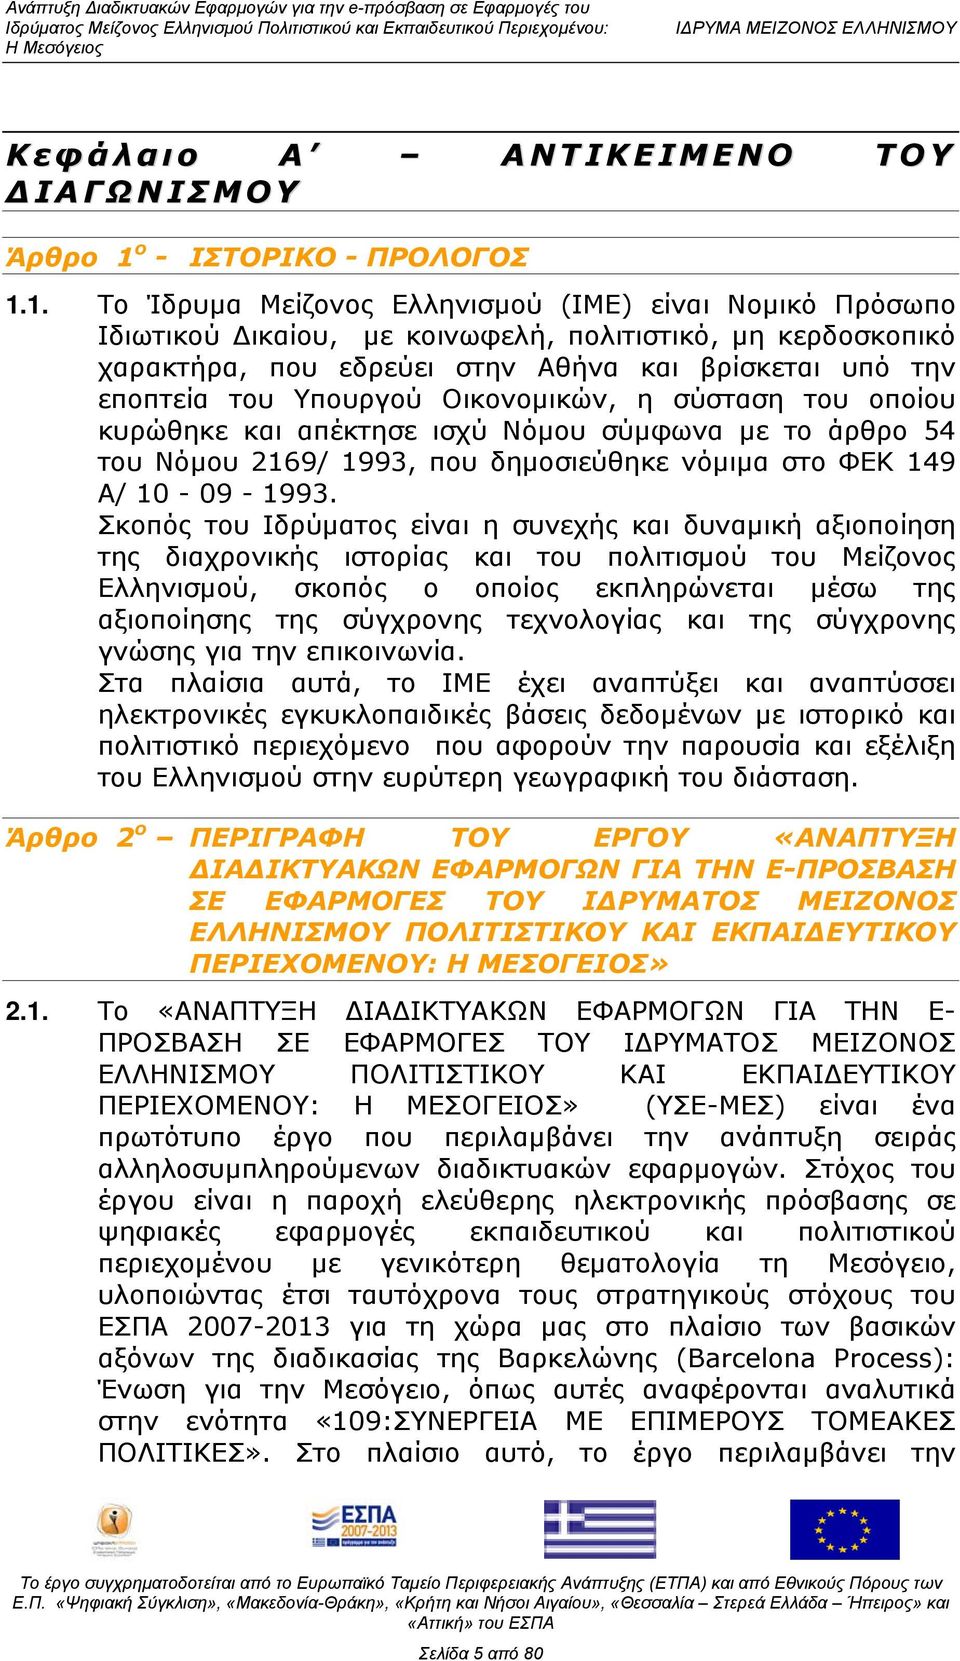 1. Το Ίδρυμα Μείζονος Ελληνισμού (ΙΜΕ) είναι Νομικό Πρόσωπο Ιδιωτικού Δικαίου, με κοινωφελή, πολιτιστικό, μη κερδοσκοπικό χαρακτήρα, που εδρεύει στην Αθήνα και βρίσκεται υπό την εποπτεία του Υπουργού